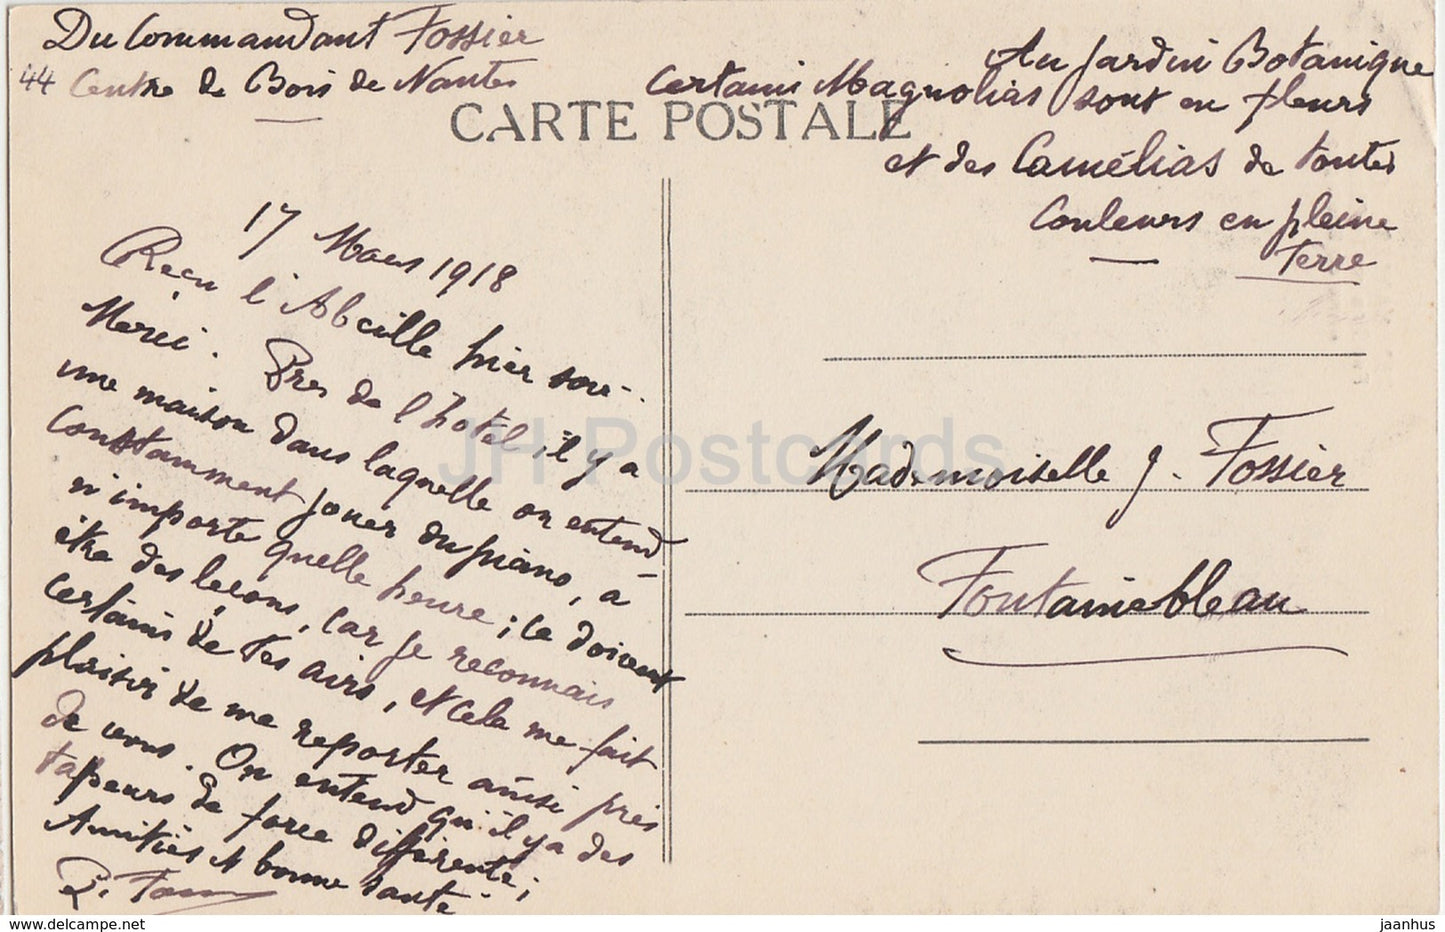 Nantes - Cour du Chateau Fenetre de la Chambre  - castle - 797 - old postcard - 1918 - France - used